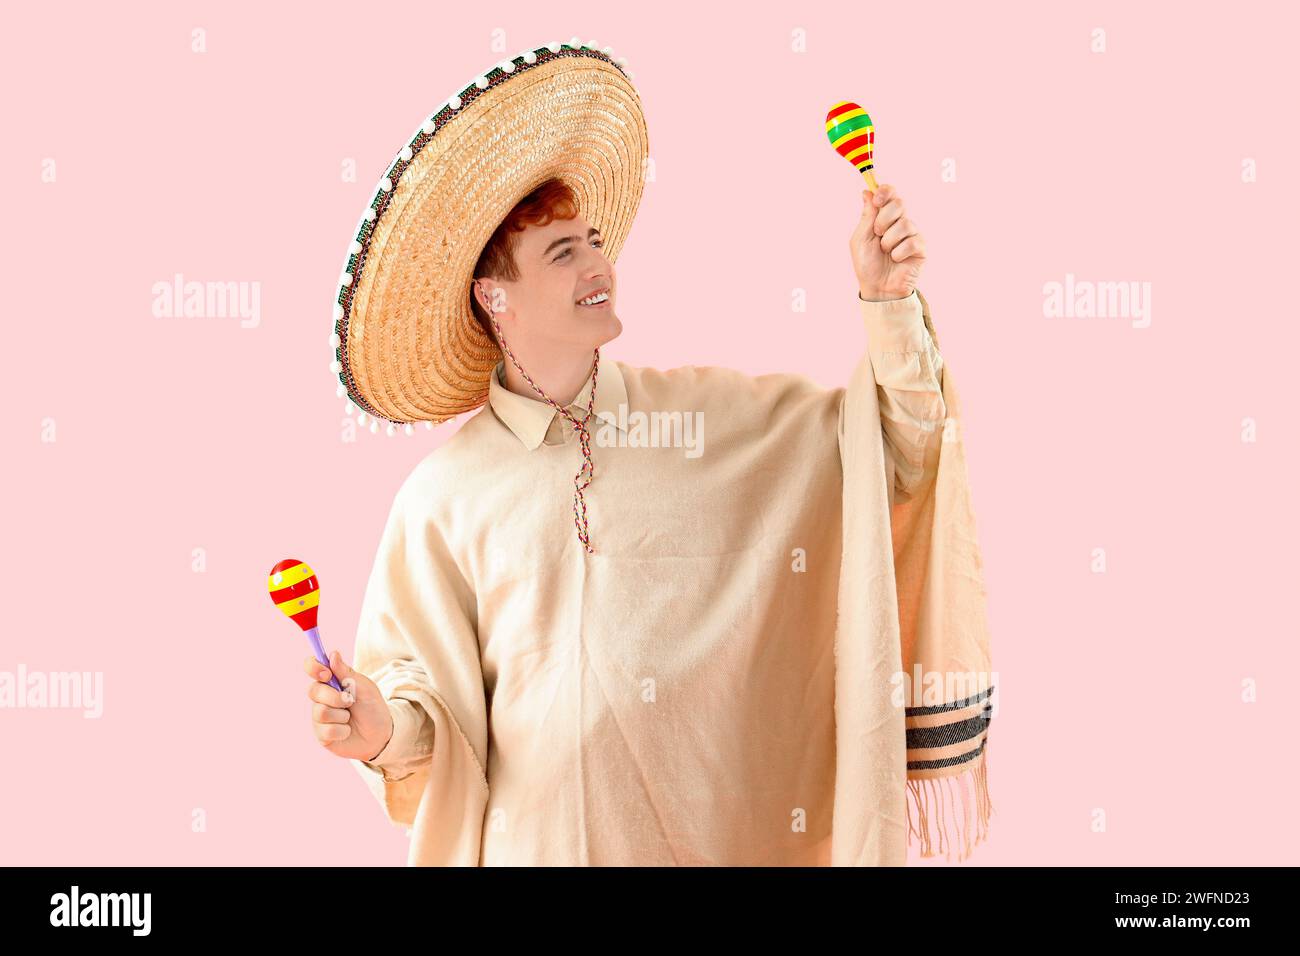 Portrait de jeune homme mexicain en sombrero, poncho et maracas sur fond rose Banque D'Images